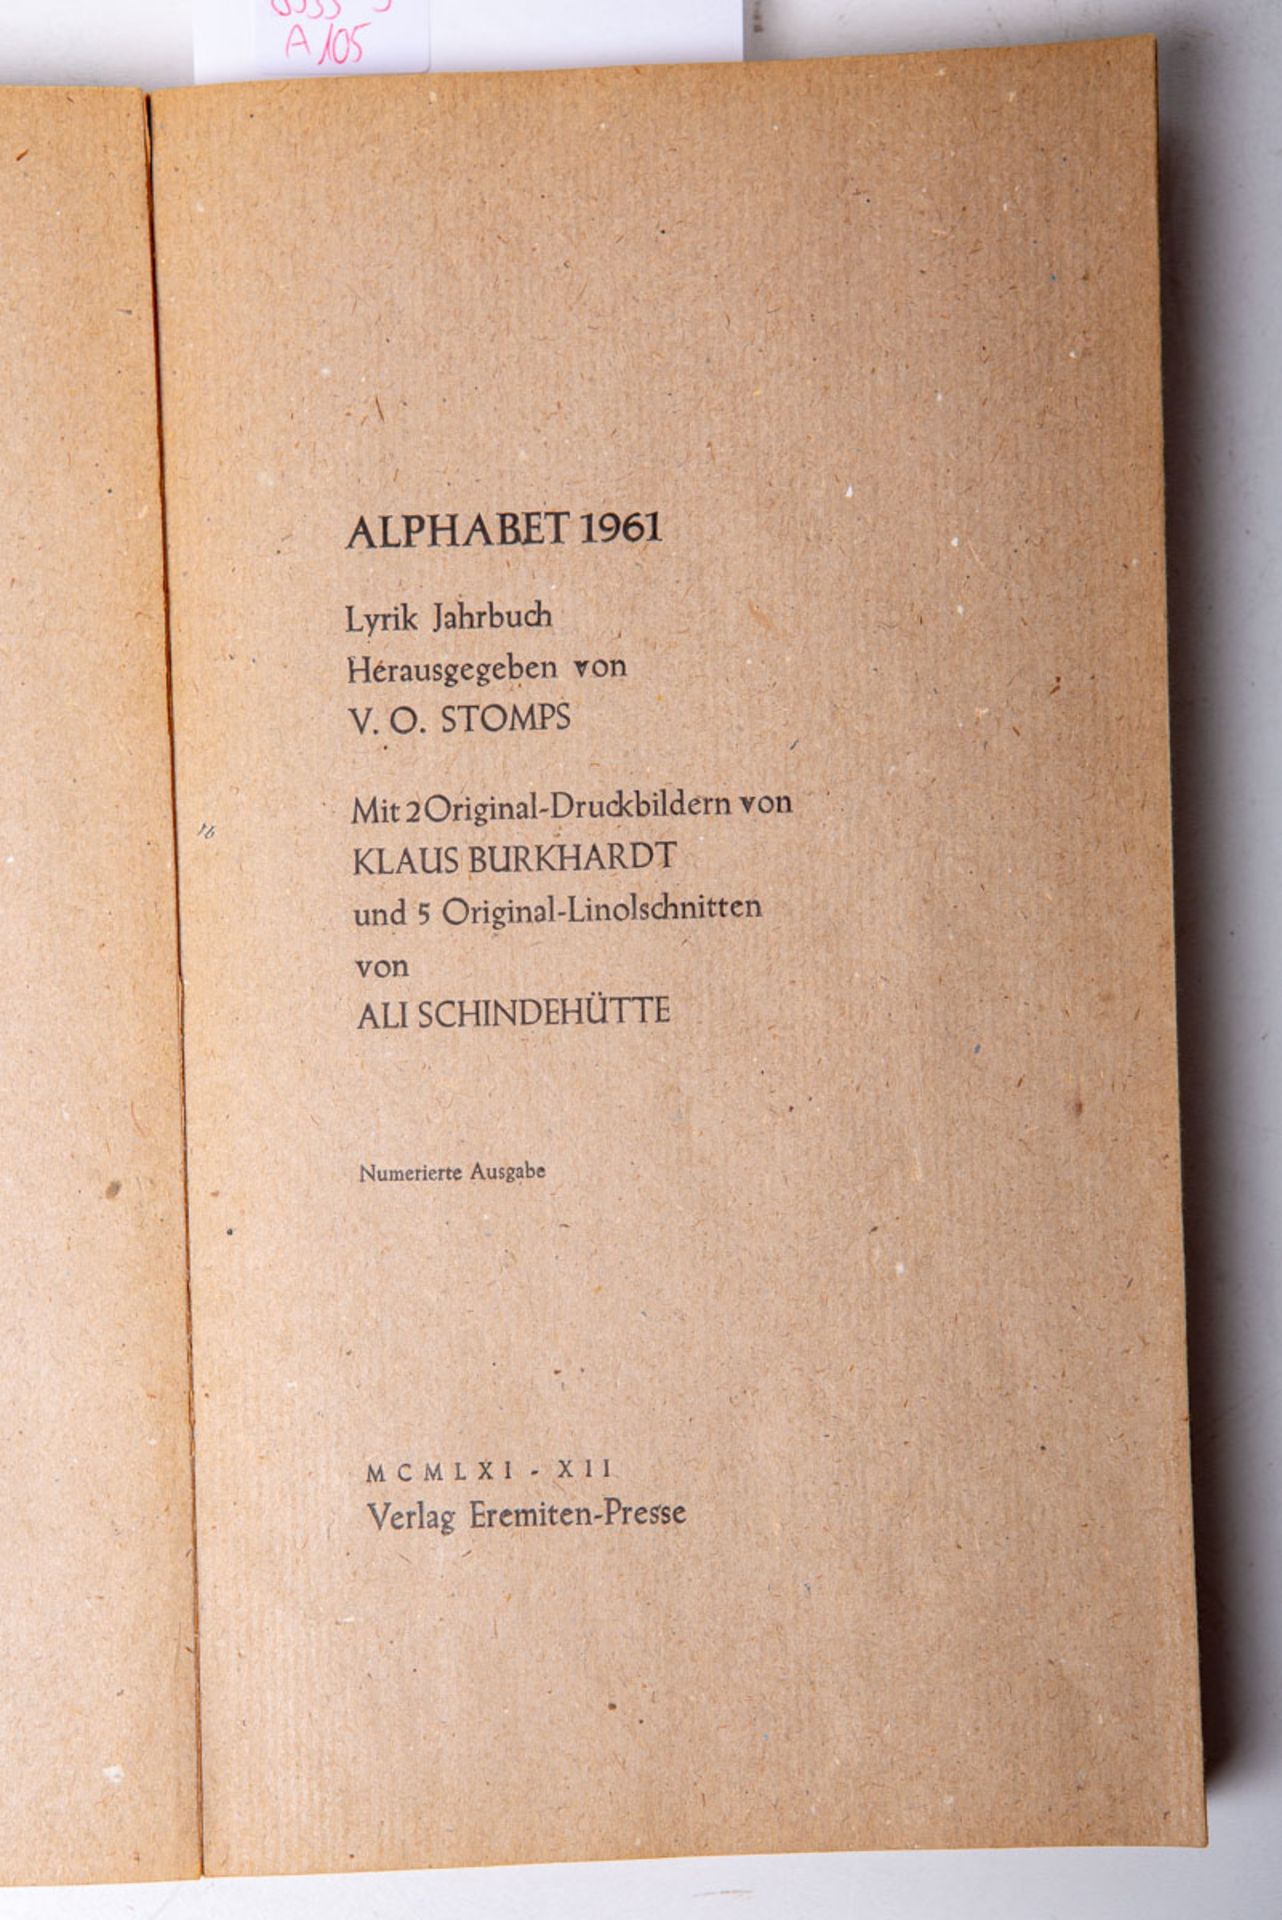 Stomps, V.O. (Hrsg.), "Alphabet 1961"